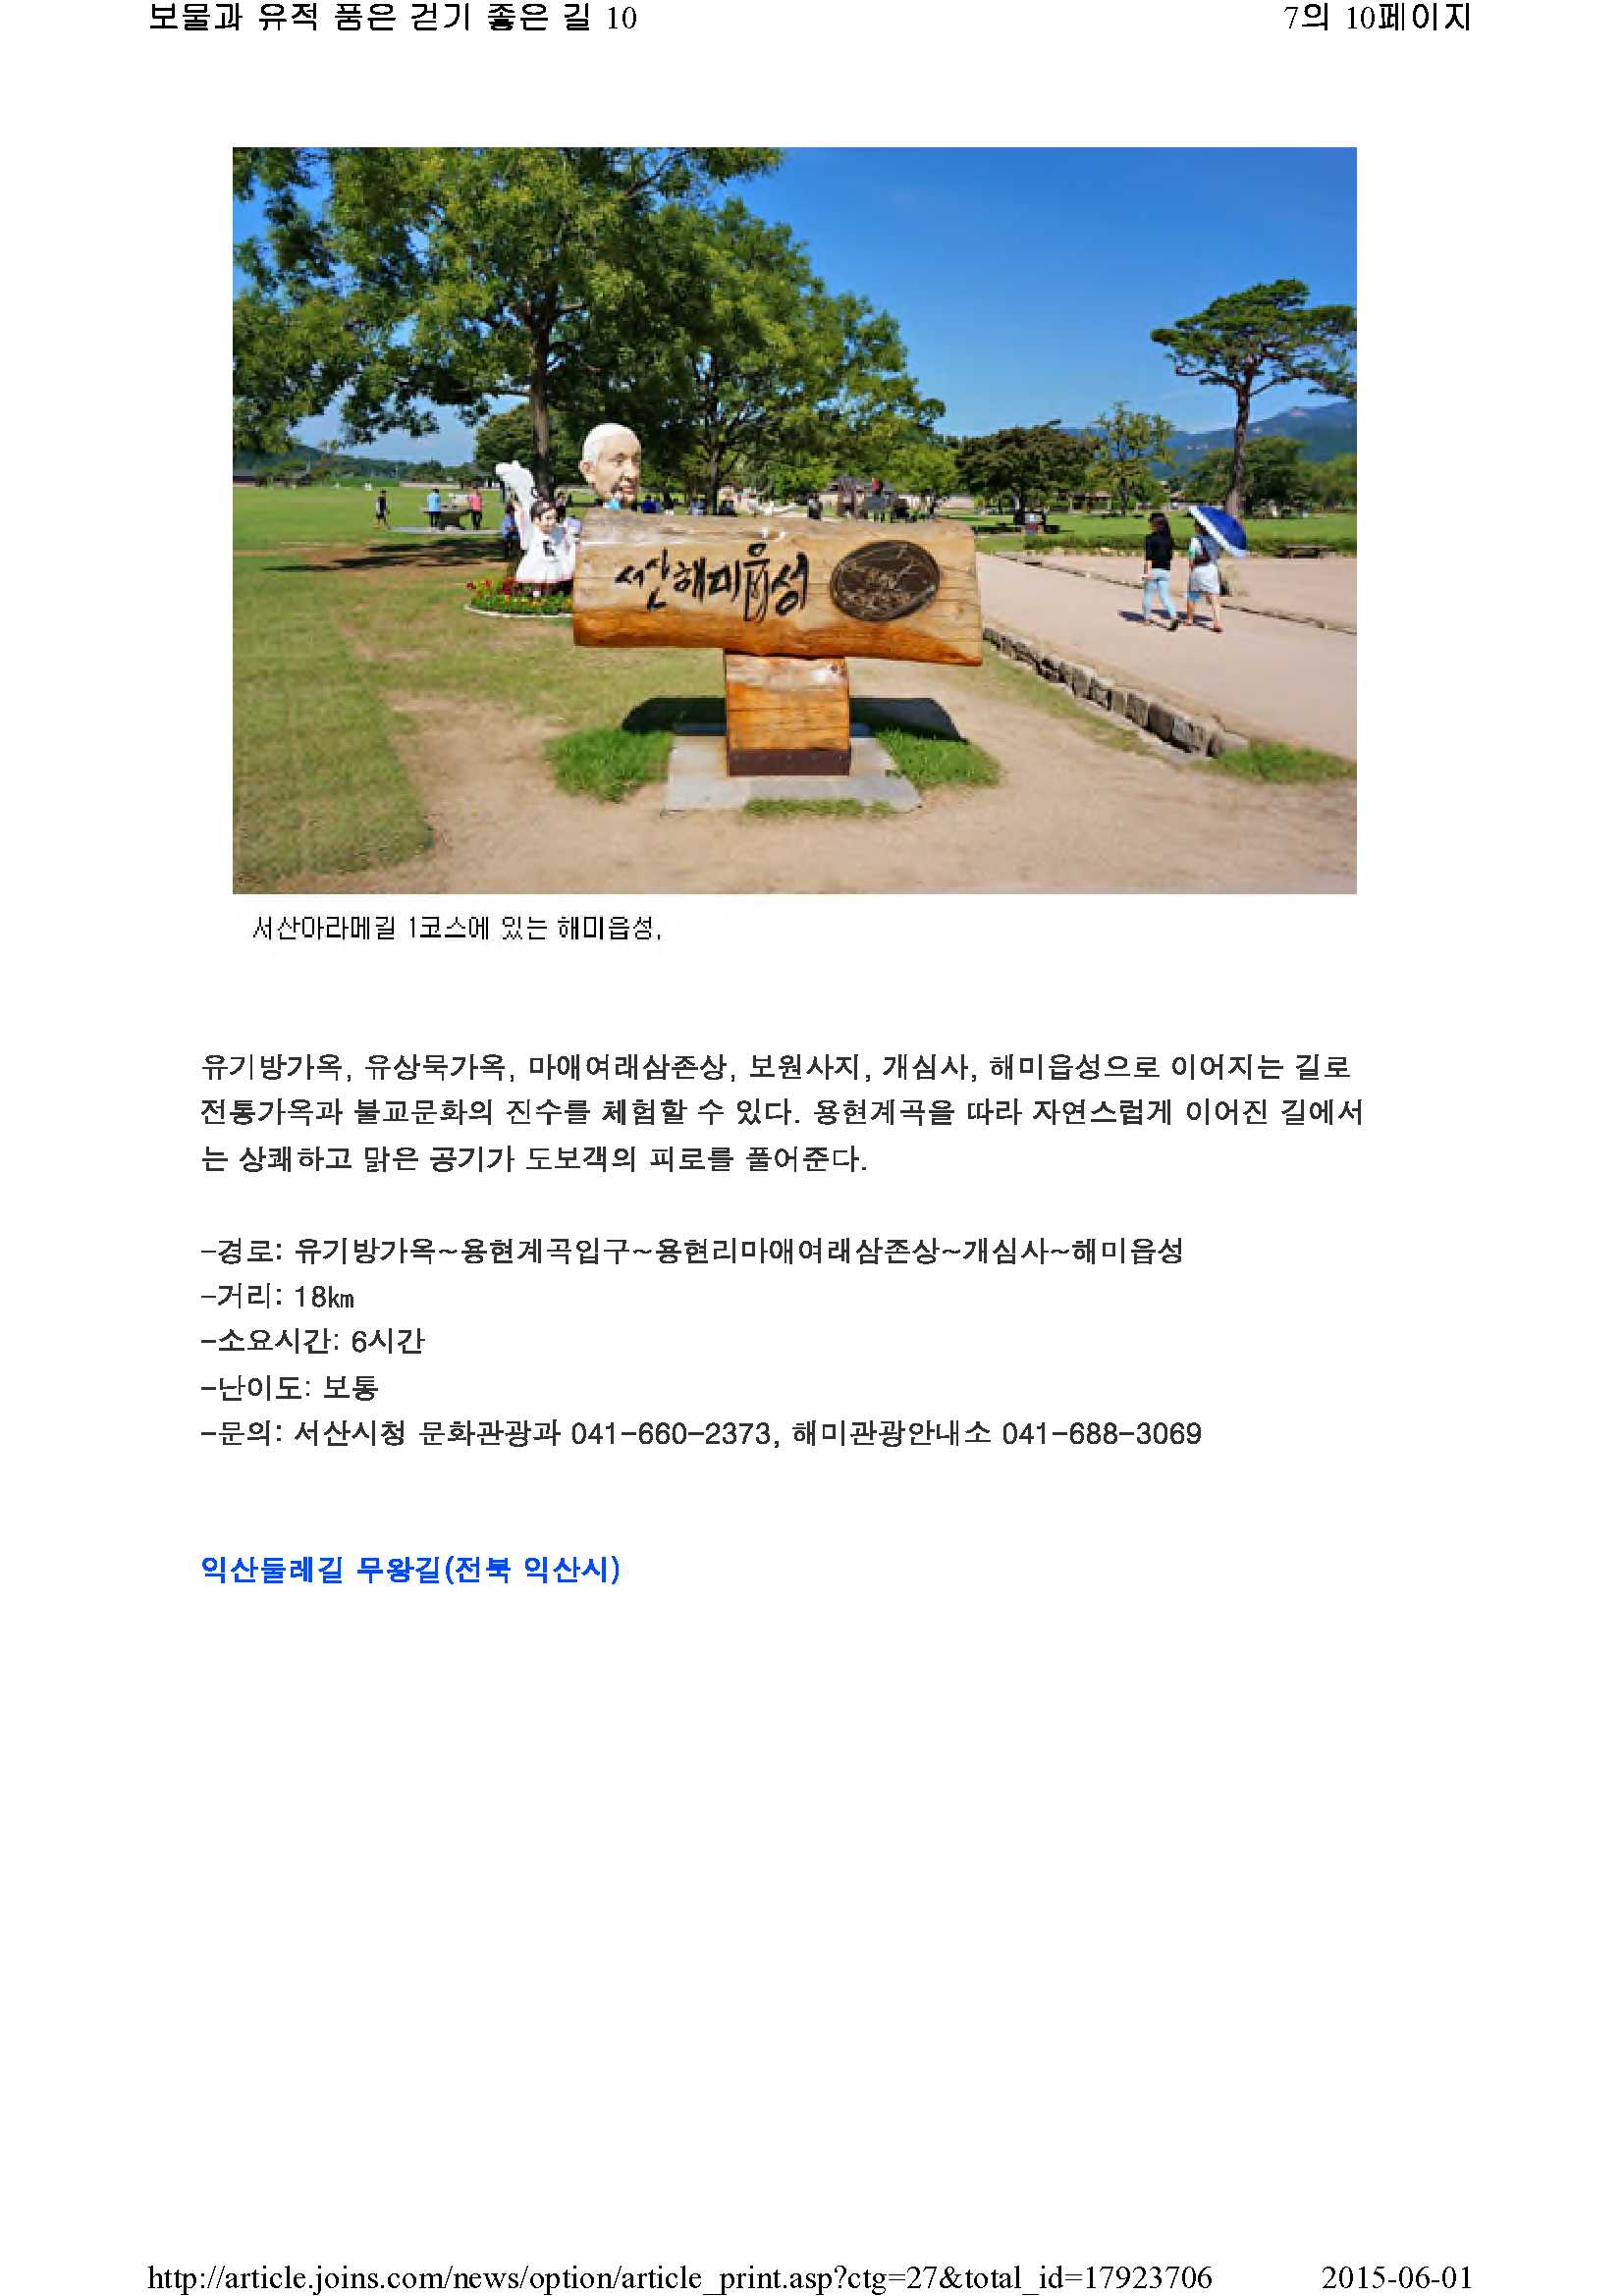 보물과 유적 품은 걷기 좋은 길 10(중앙일보)_7.jpg